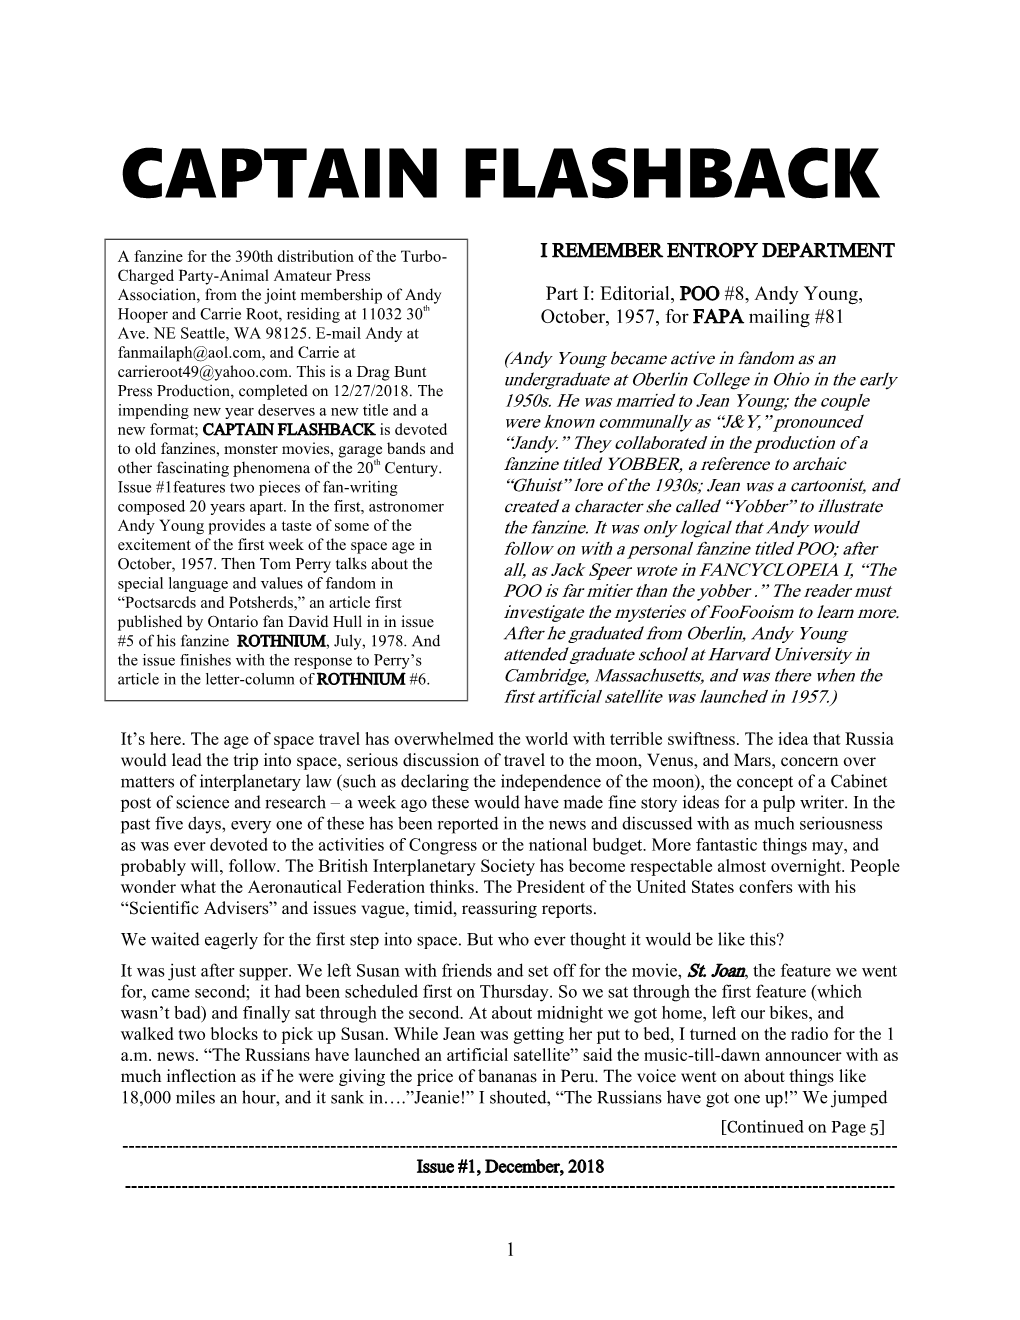 Captain Flashback #1